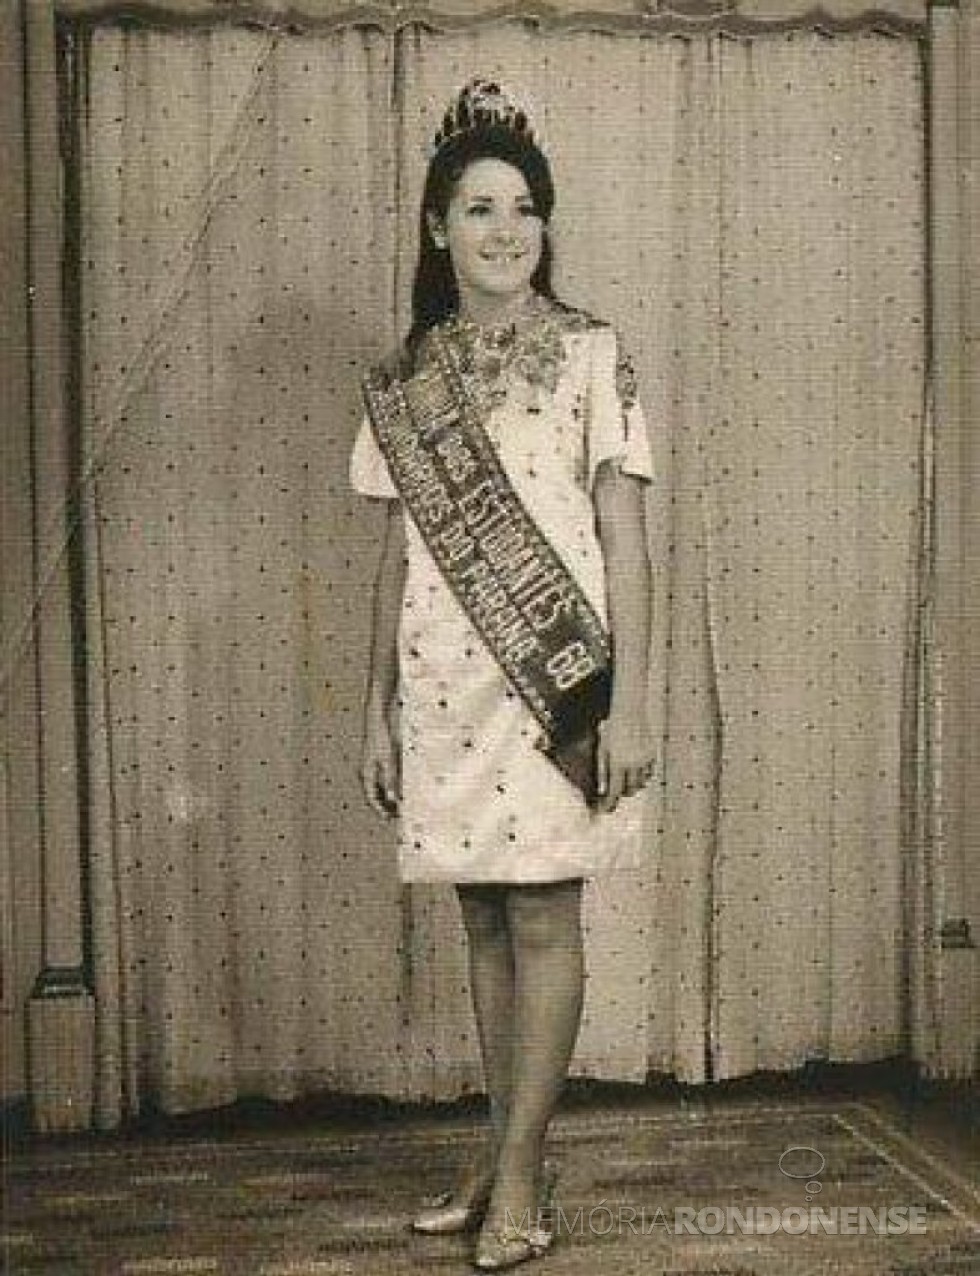 || Miriam Lúcia Fernandes Mazzaferro eleita Rainha dos Estudantes Secundaristas do Paraná 1968, em janeiro de 1968.
Imagem: Acervo pessoal - FOTO 4 - 